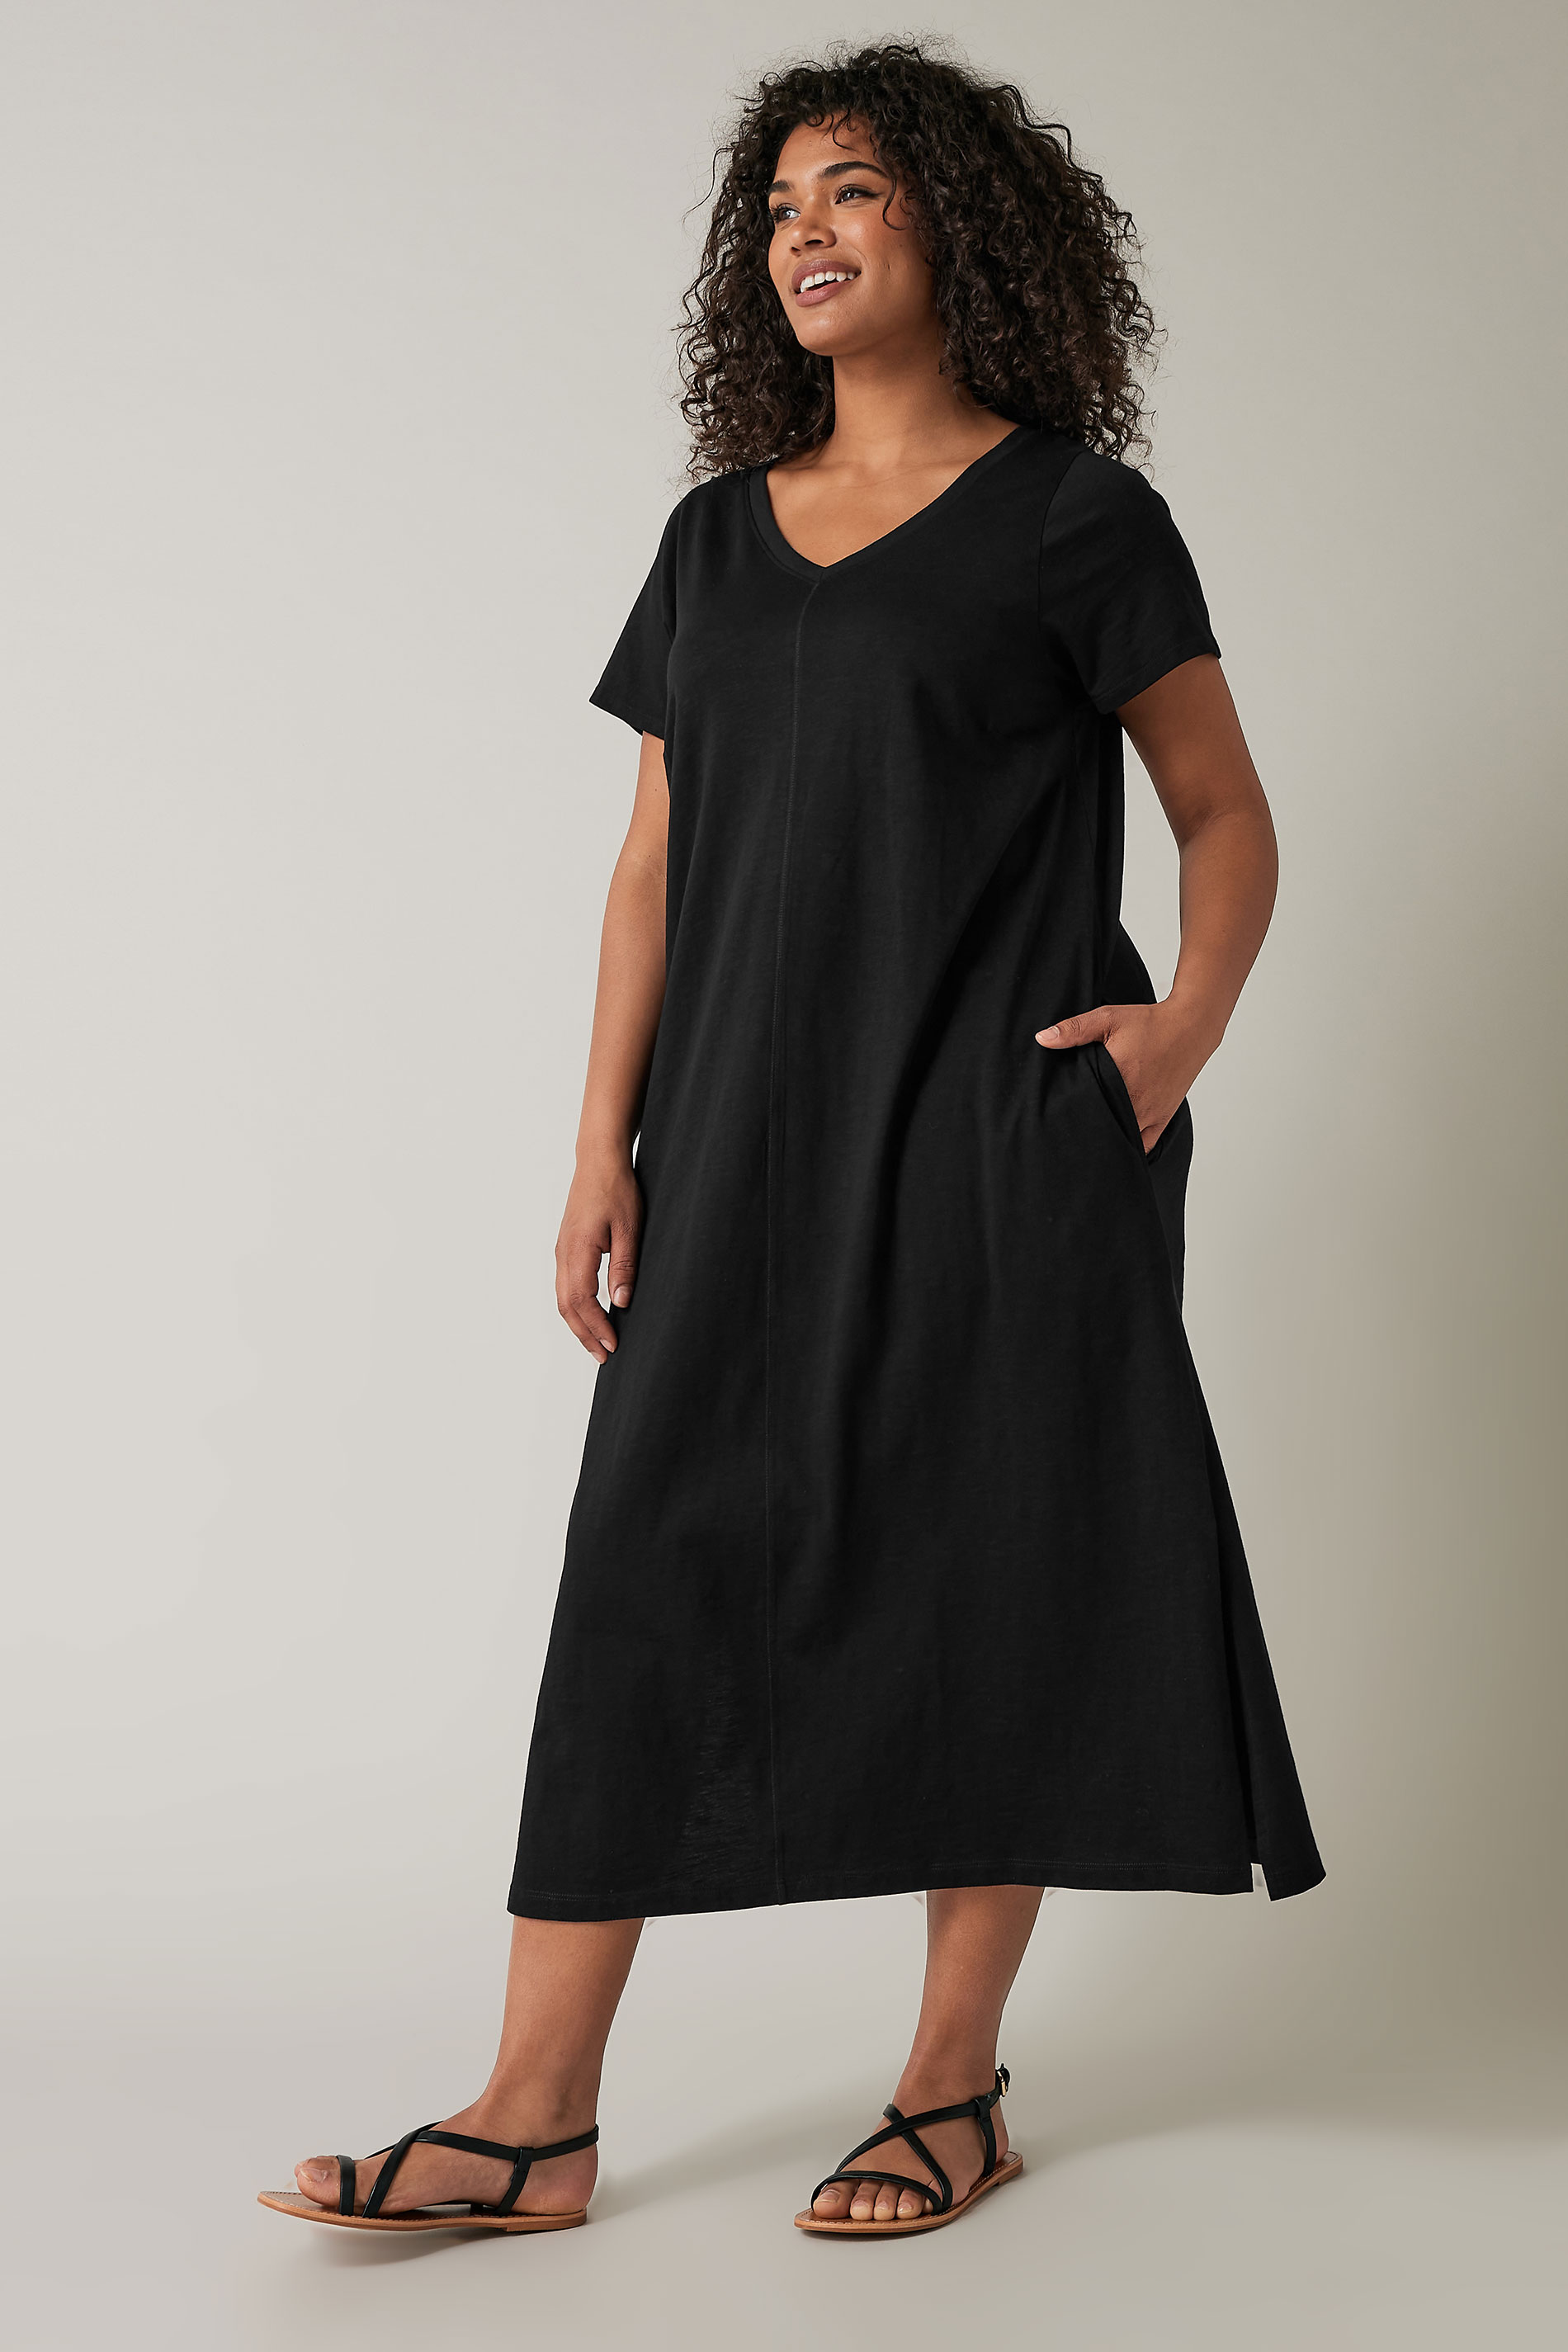 EVANS Plus Size Black Cotton Midi Dress | Evans 2